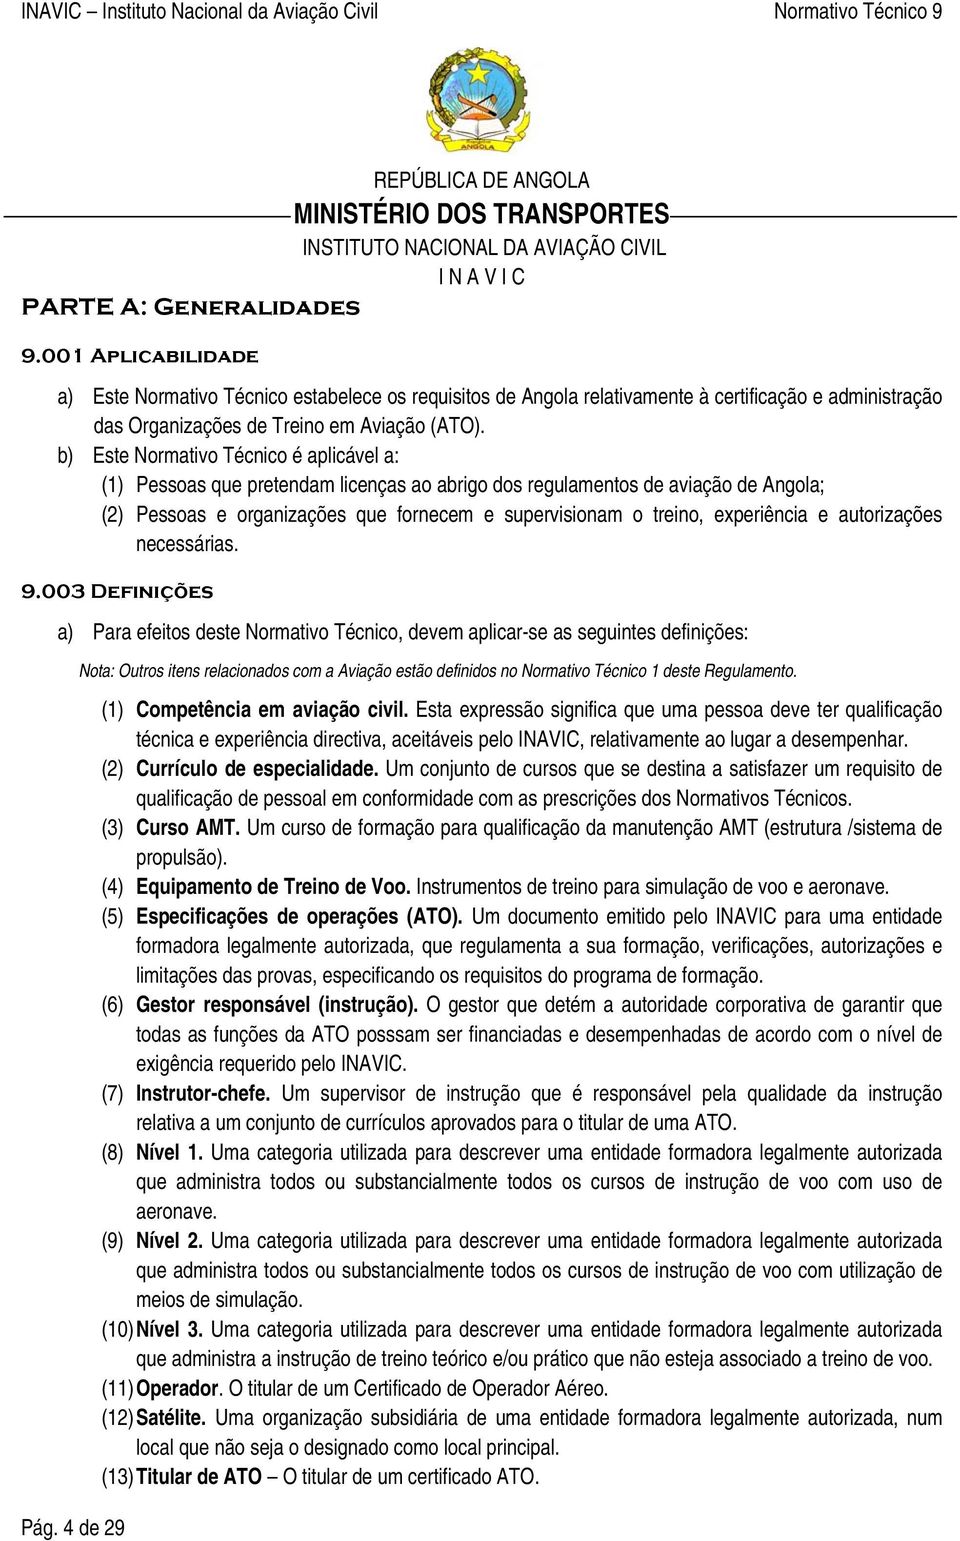 b) Este Normativo Técnico é aplicável a: (1) Pessoas que pretendam licenças ao abrigo dos regulamentos de aviação de Angola; (2) Pessoas e organizações que fornecem e supervisionam o treino,